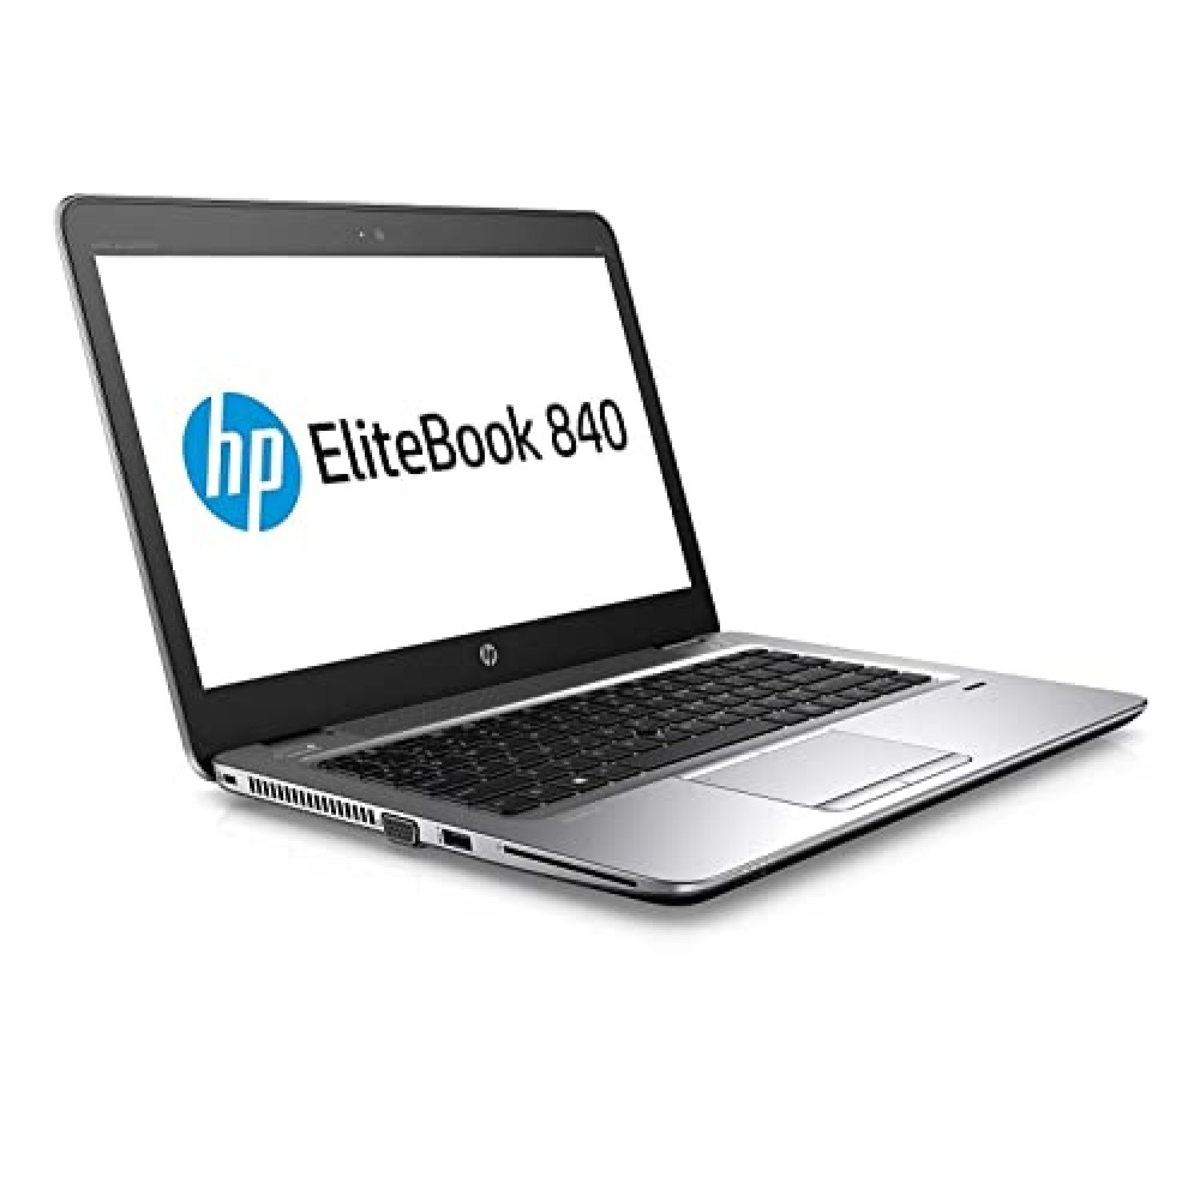 HP EliteBook 840 1